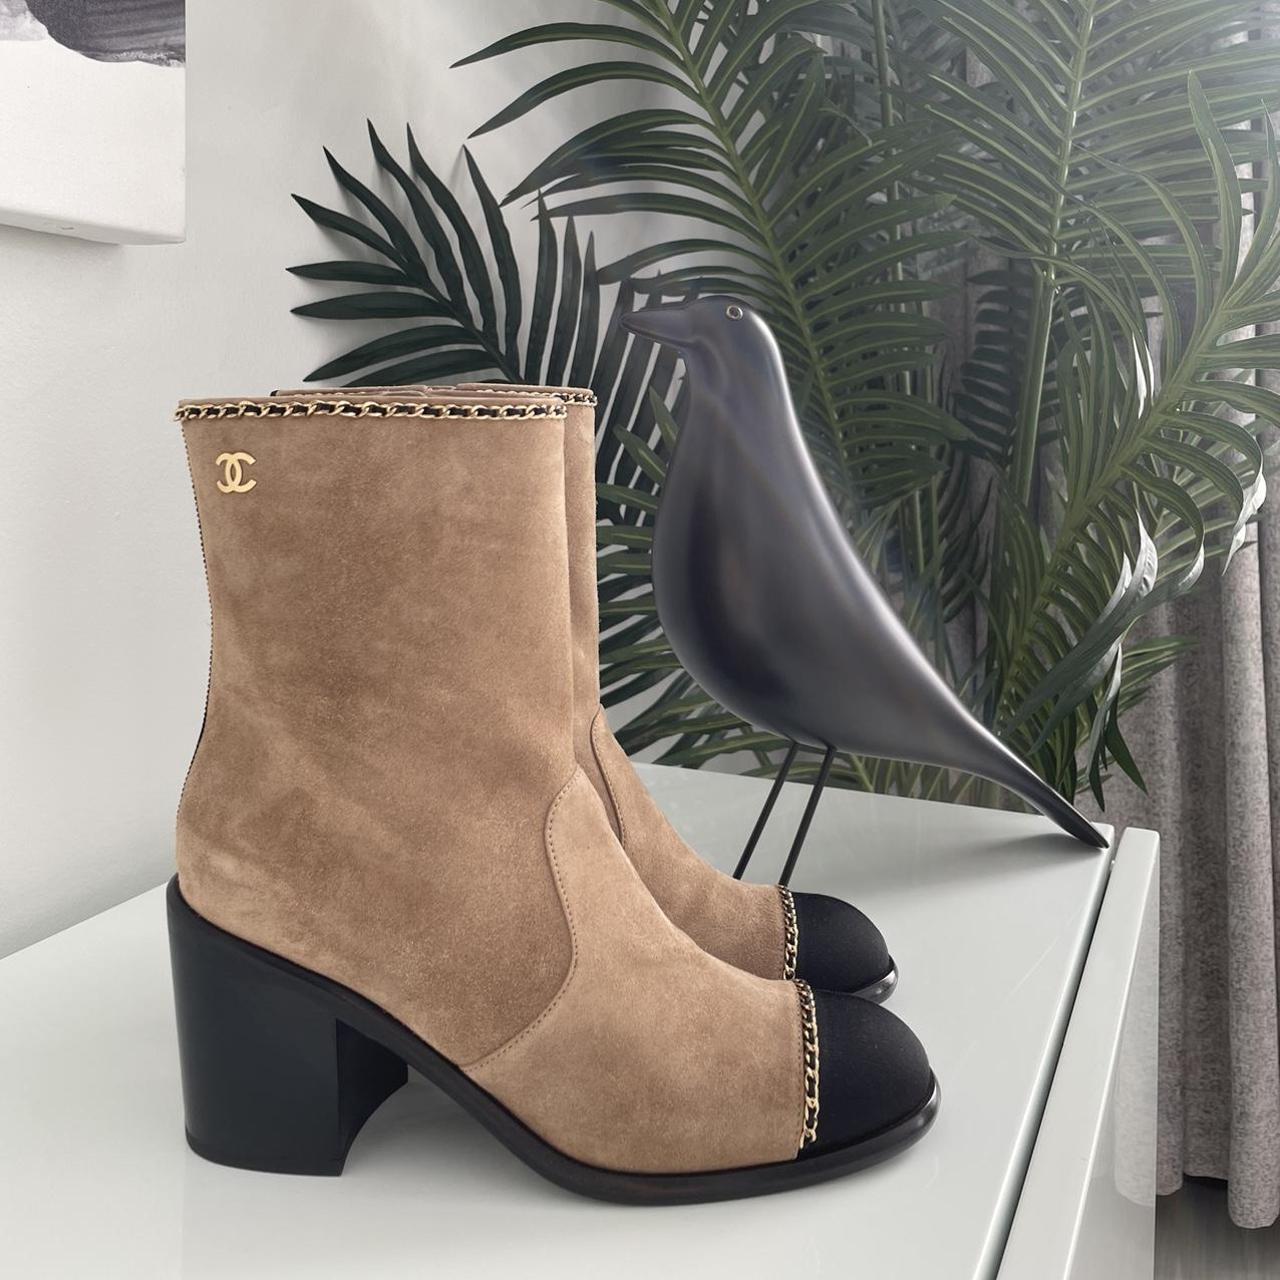 Chanel 2021 suede cap toe boots. 100% authentic. - Depop